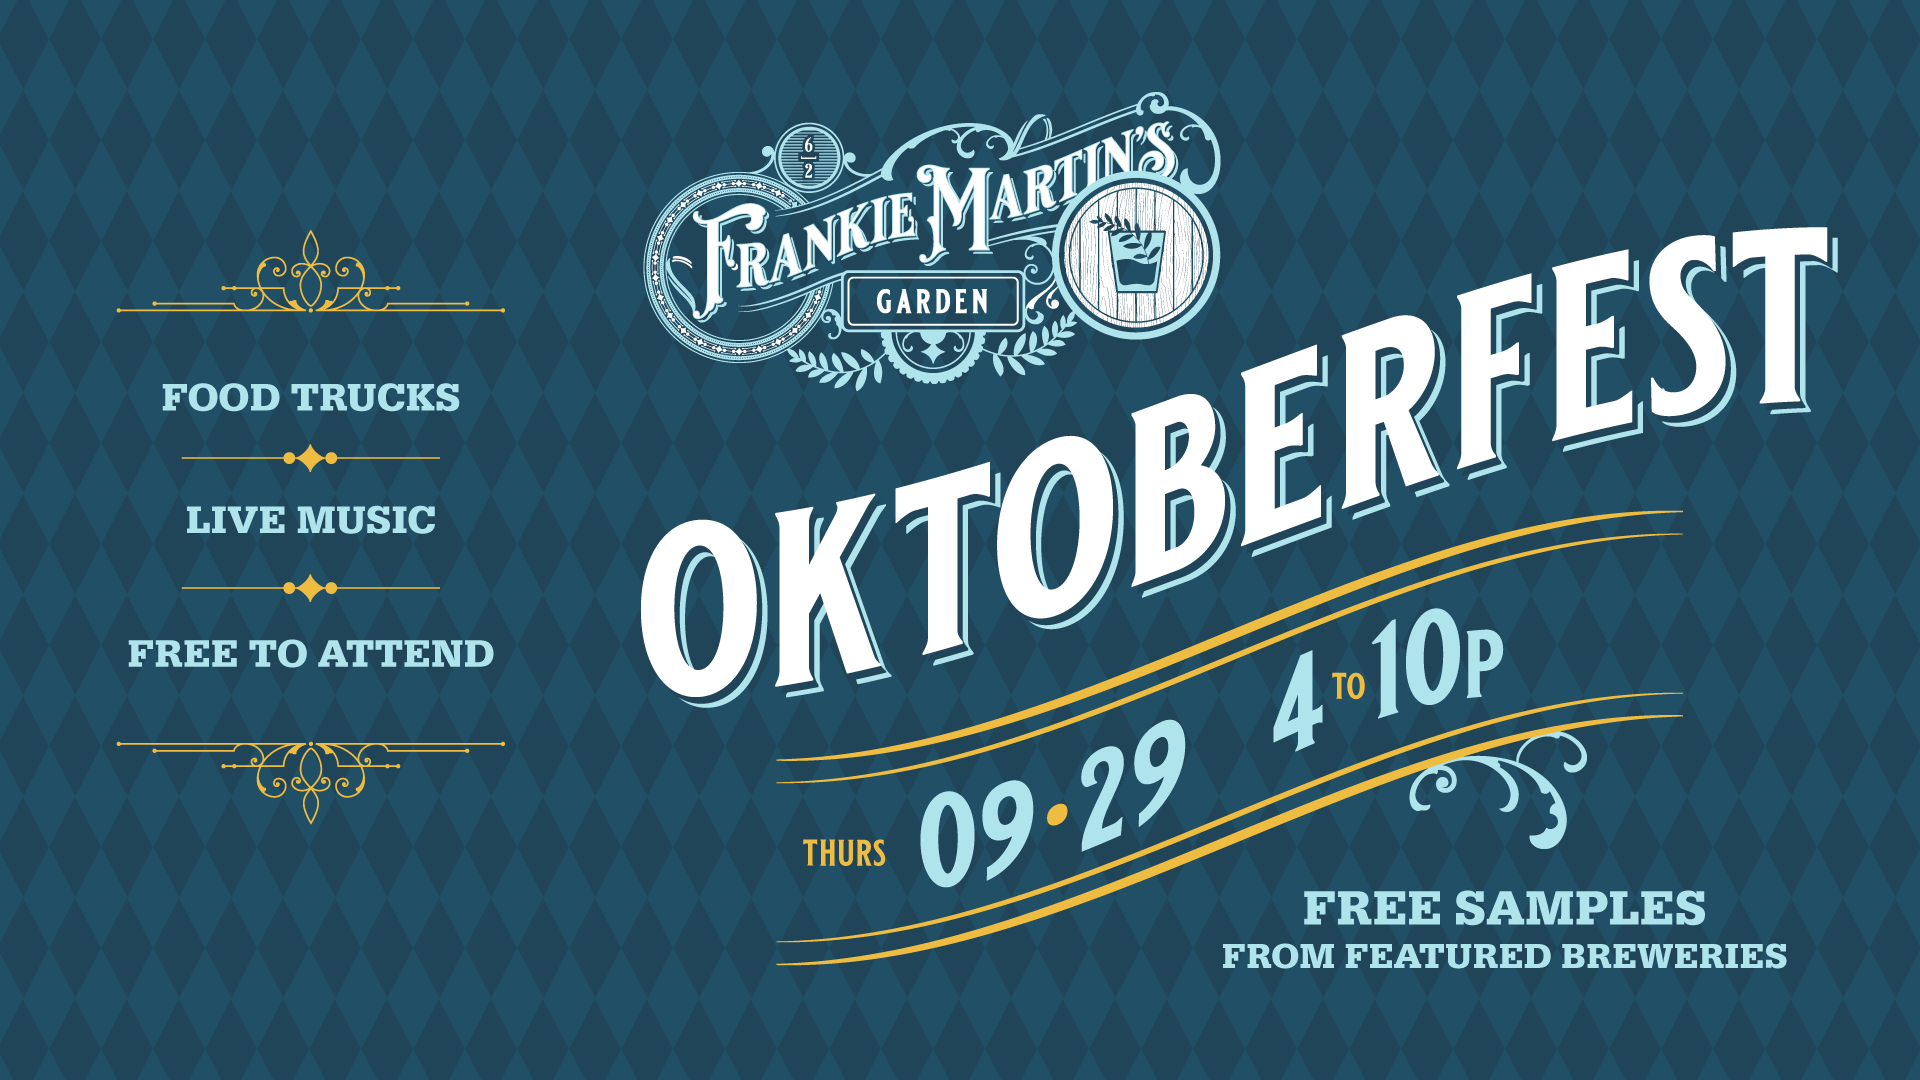 Oktoberfest at Frankie Martin's Garden Thursday, Sept 29 from 4-10p